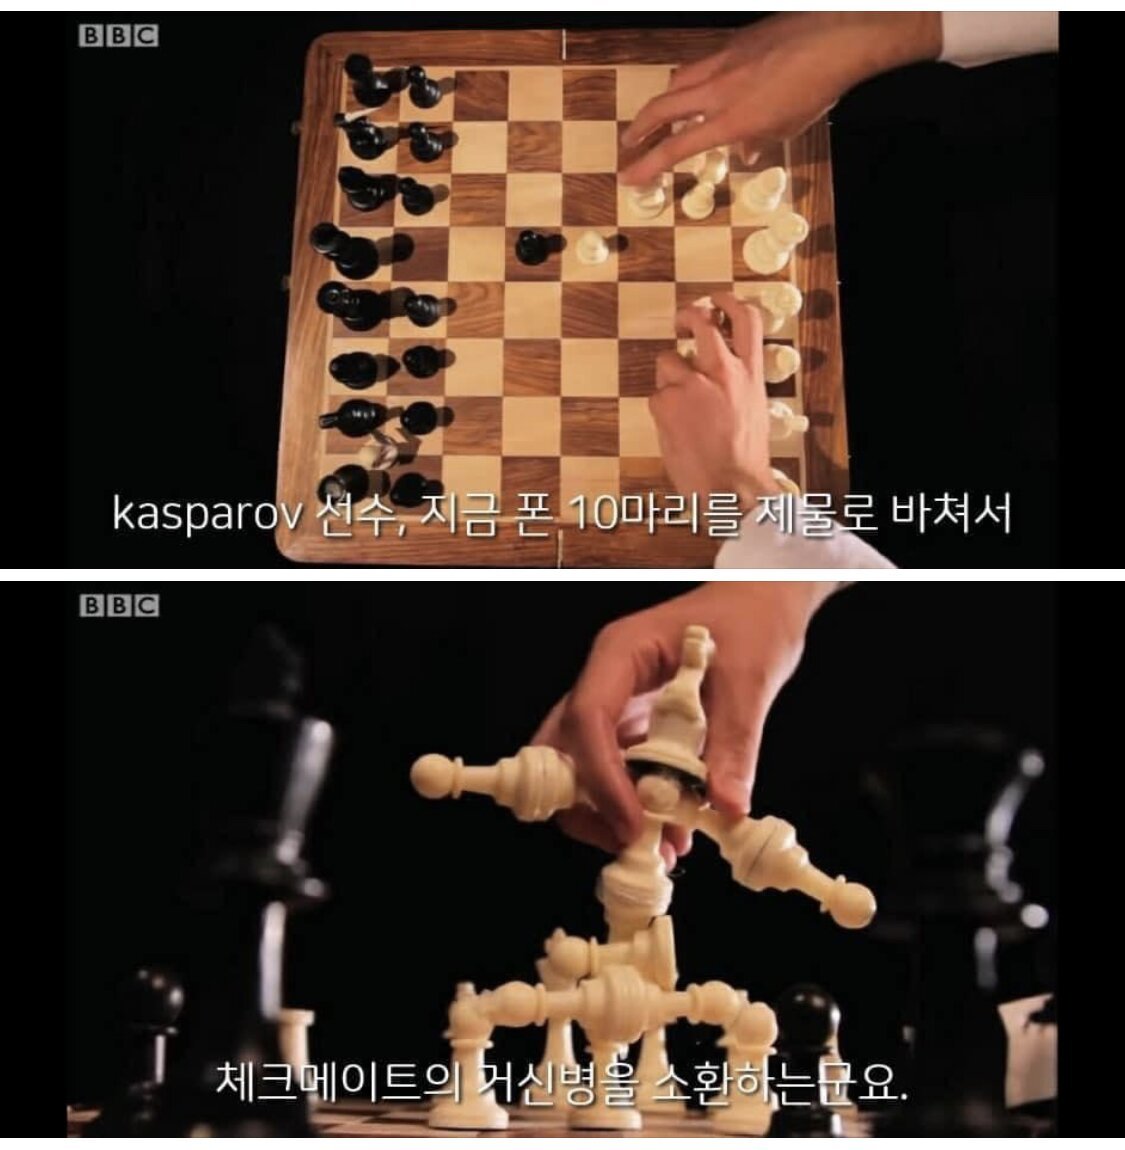 ●意外にチェスではいけない戦略